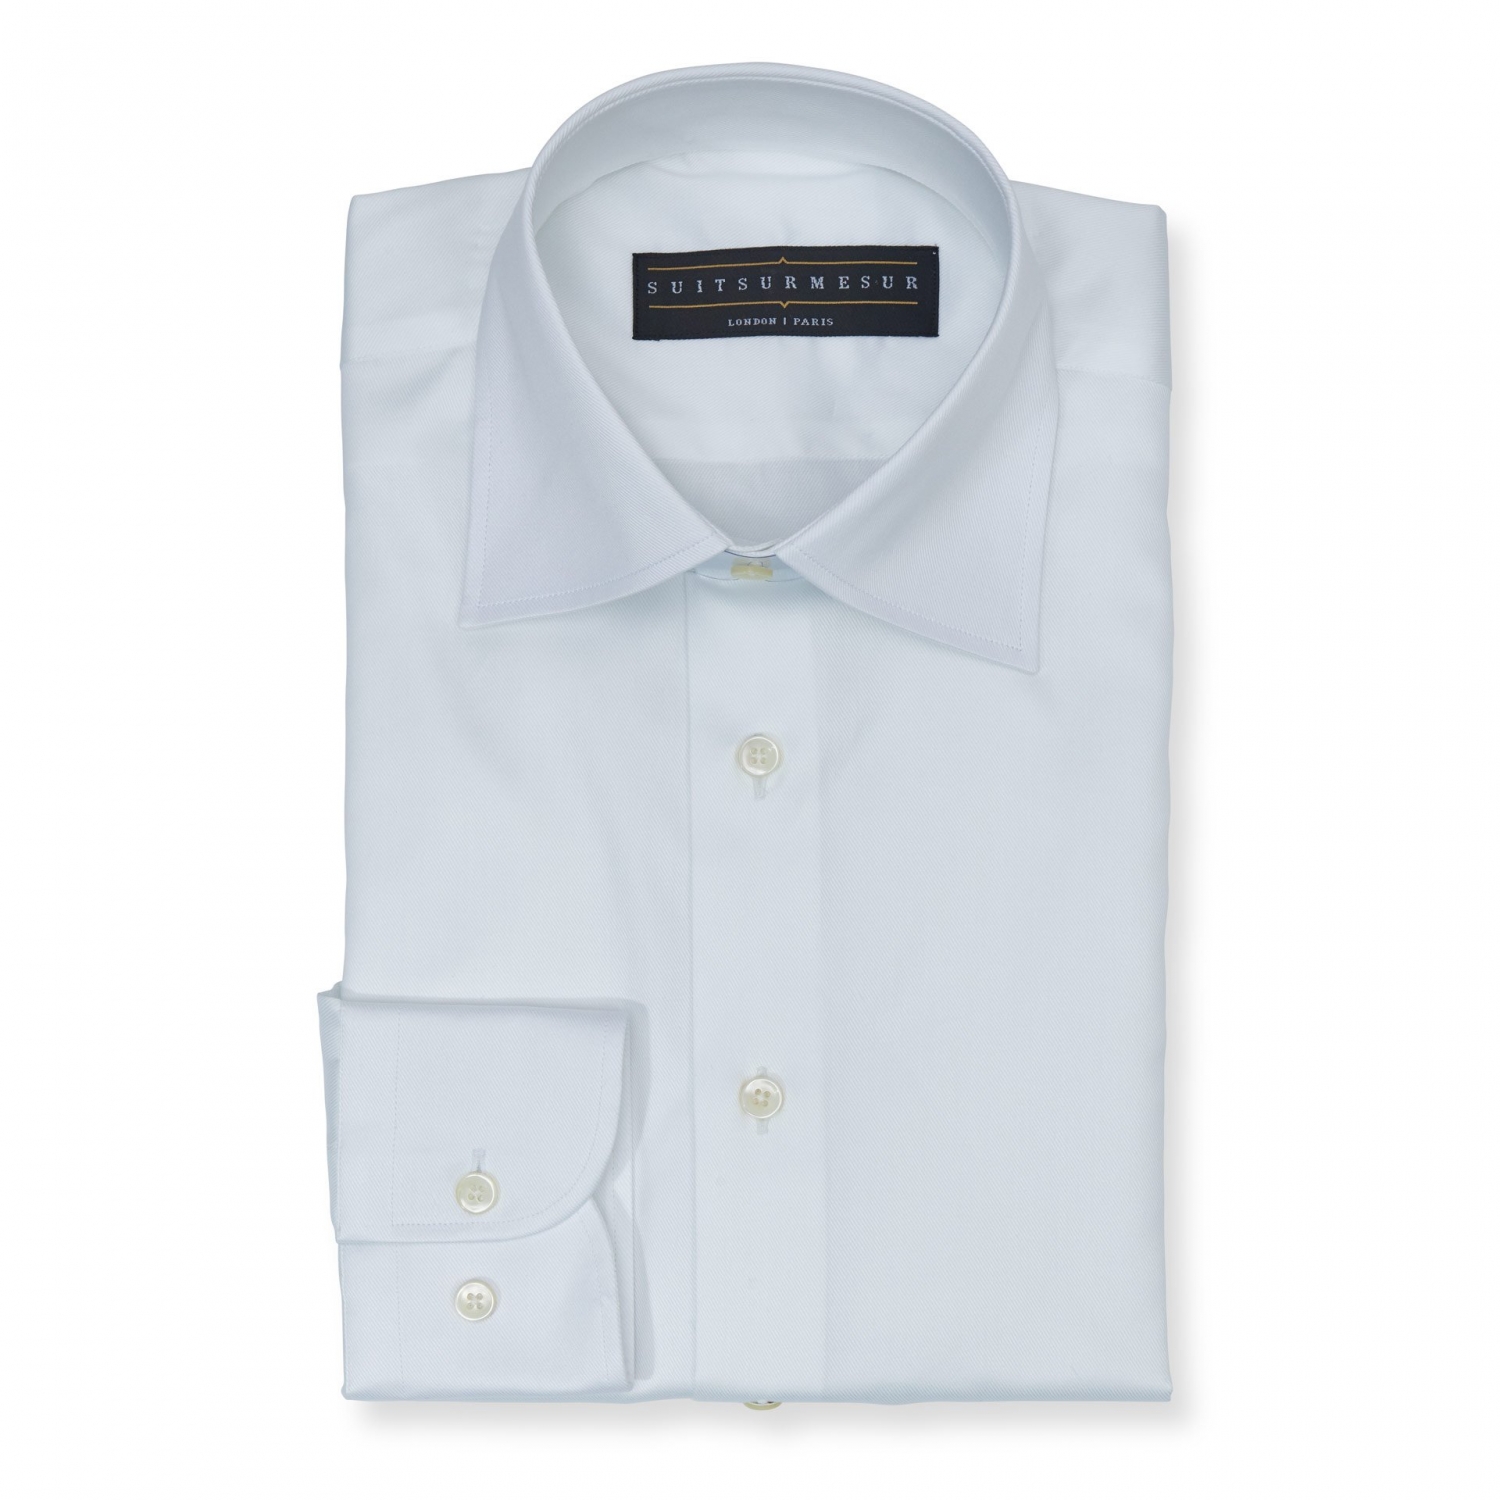 Solid white (half Italian collar) Oxford shirt - 100% cotton Albini 1876 fabric